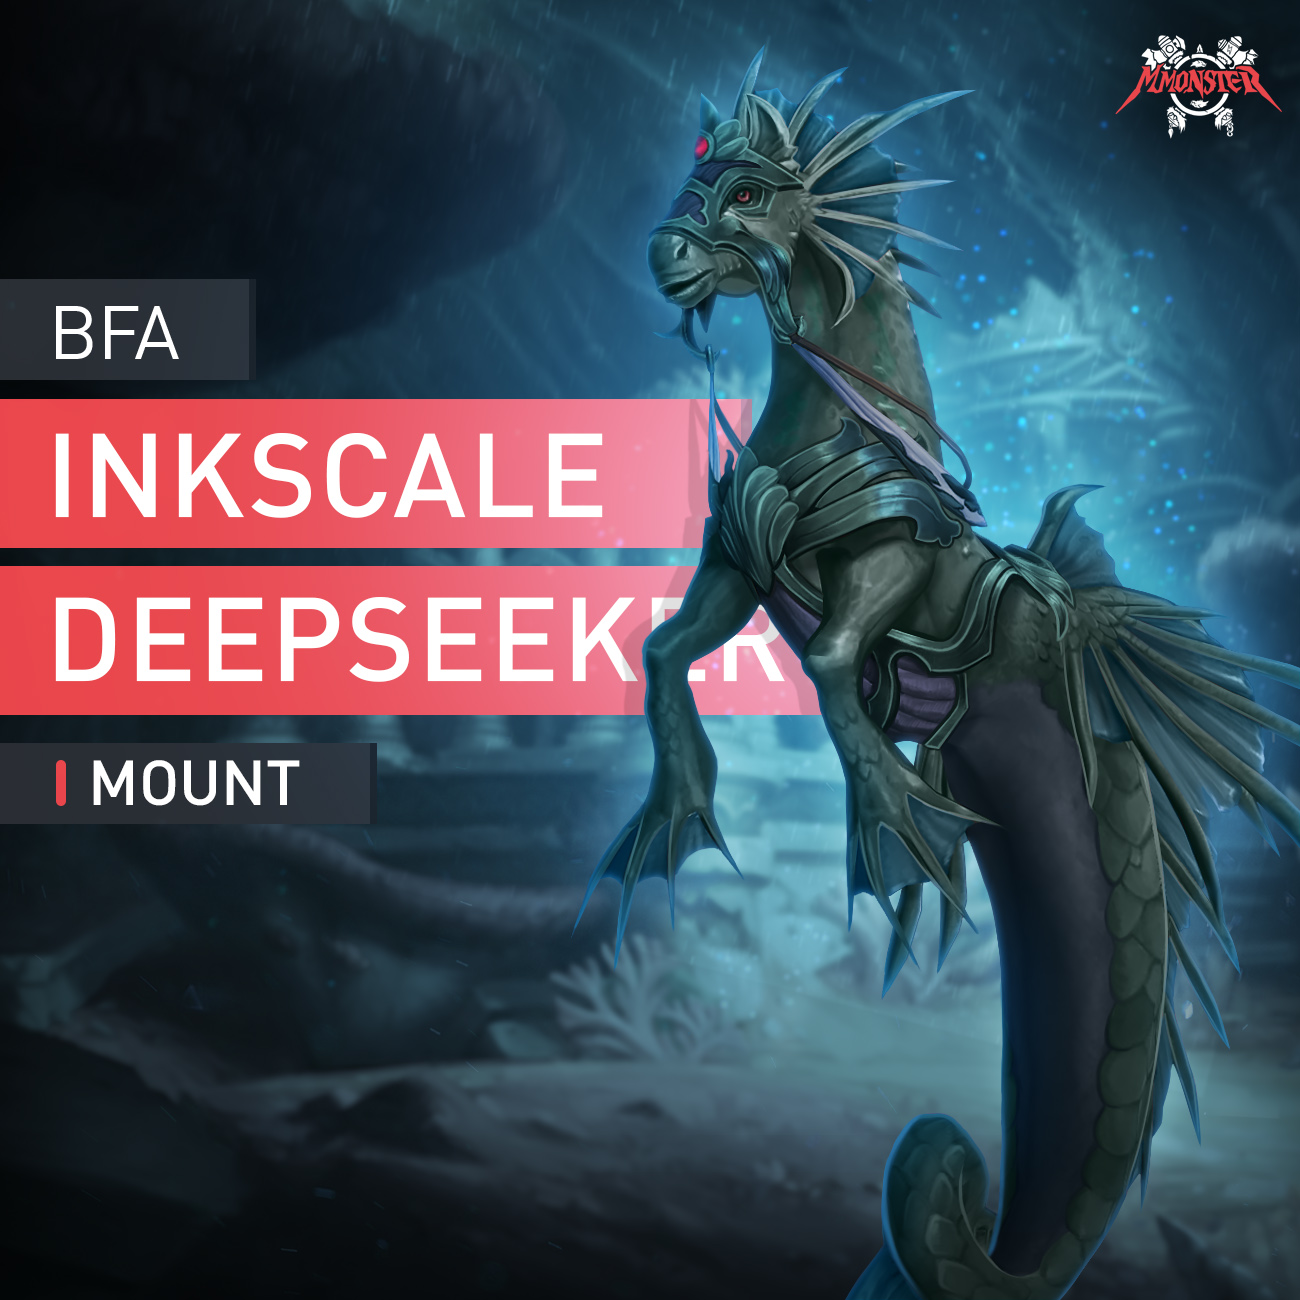 Inkscale Deepseeker Mount